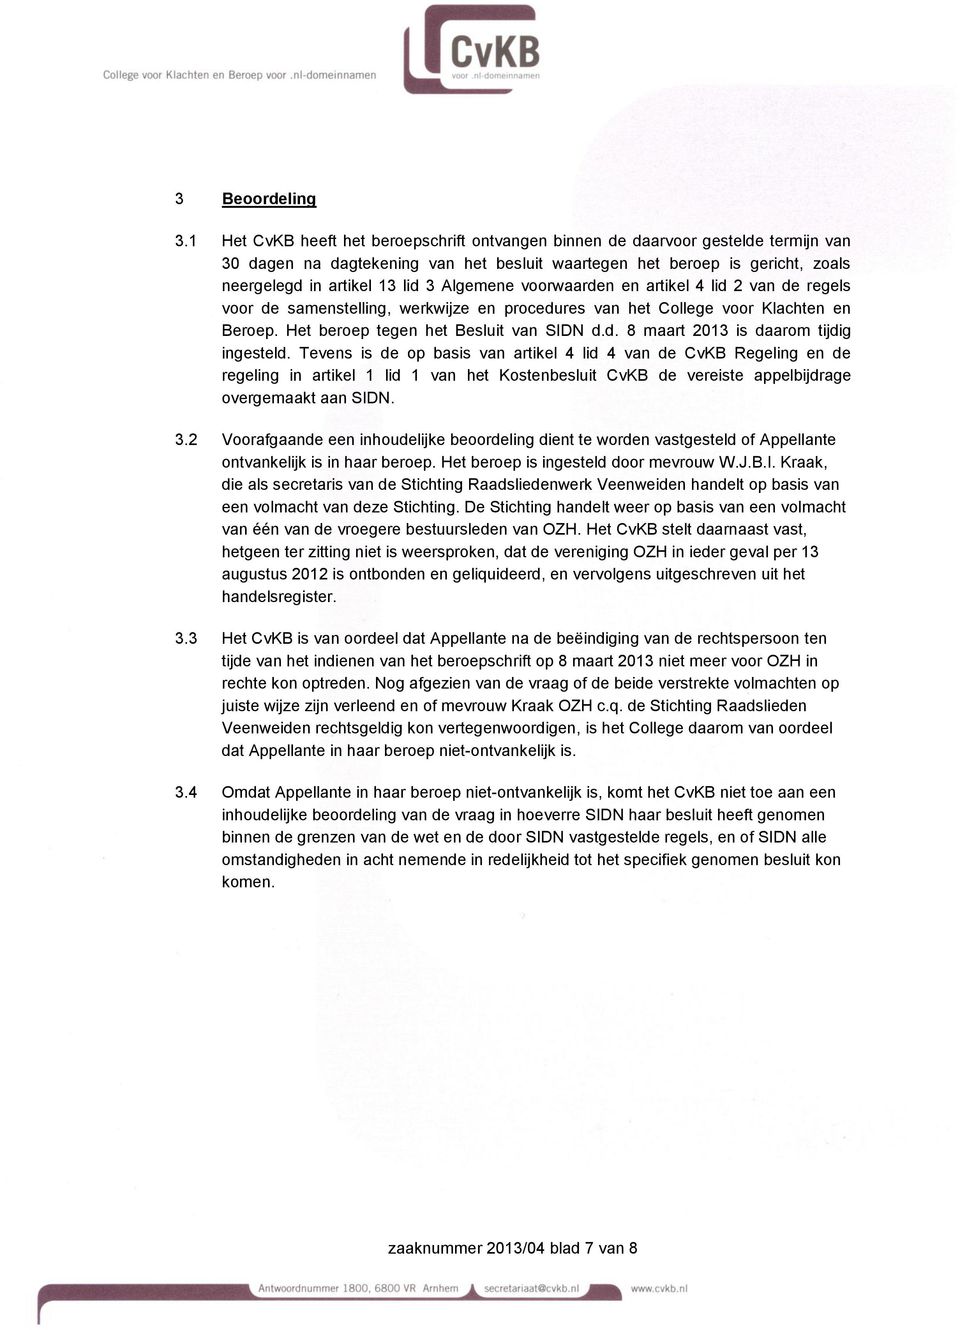 Algemene voorwaarden en artikel 4 lid 2 van de regels voor de samenstelling, werkwijze en procedures van het College voor Klachten en Beroep. Het beroep tegen het Besluit van SIDN d.d. 8 maart 2013 is daarom tijdig ingesteld.